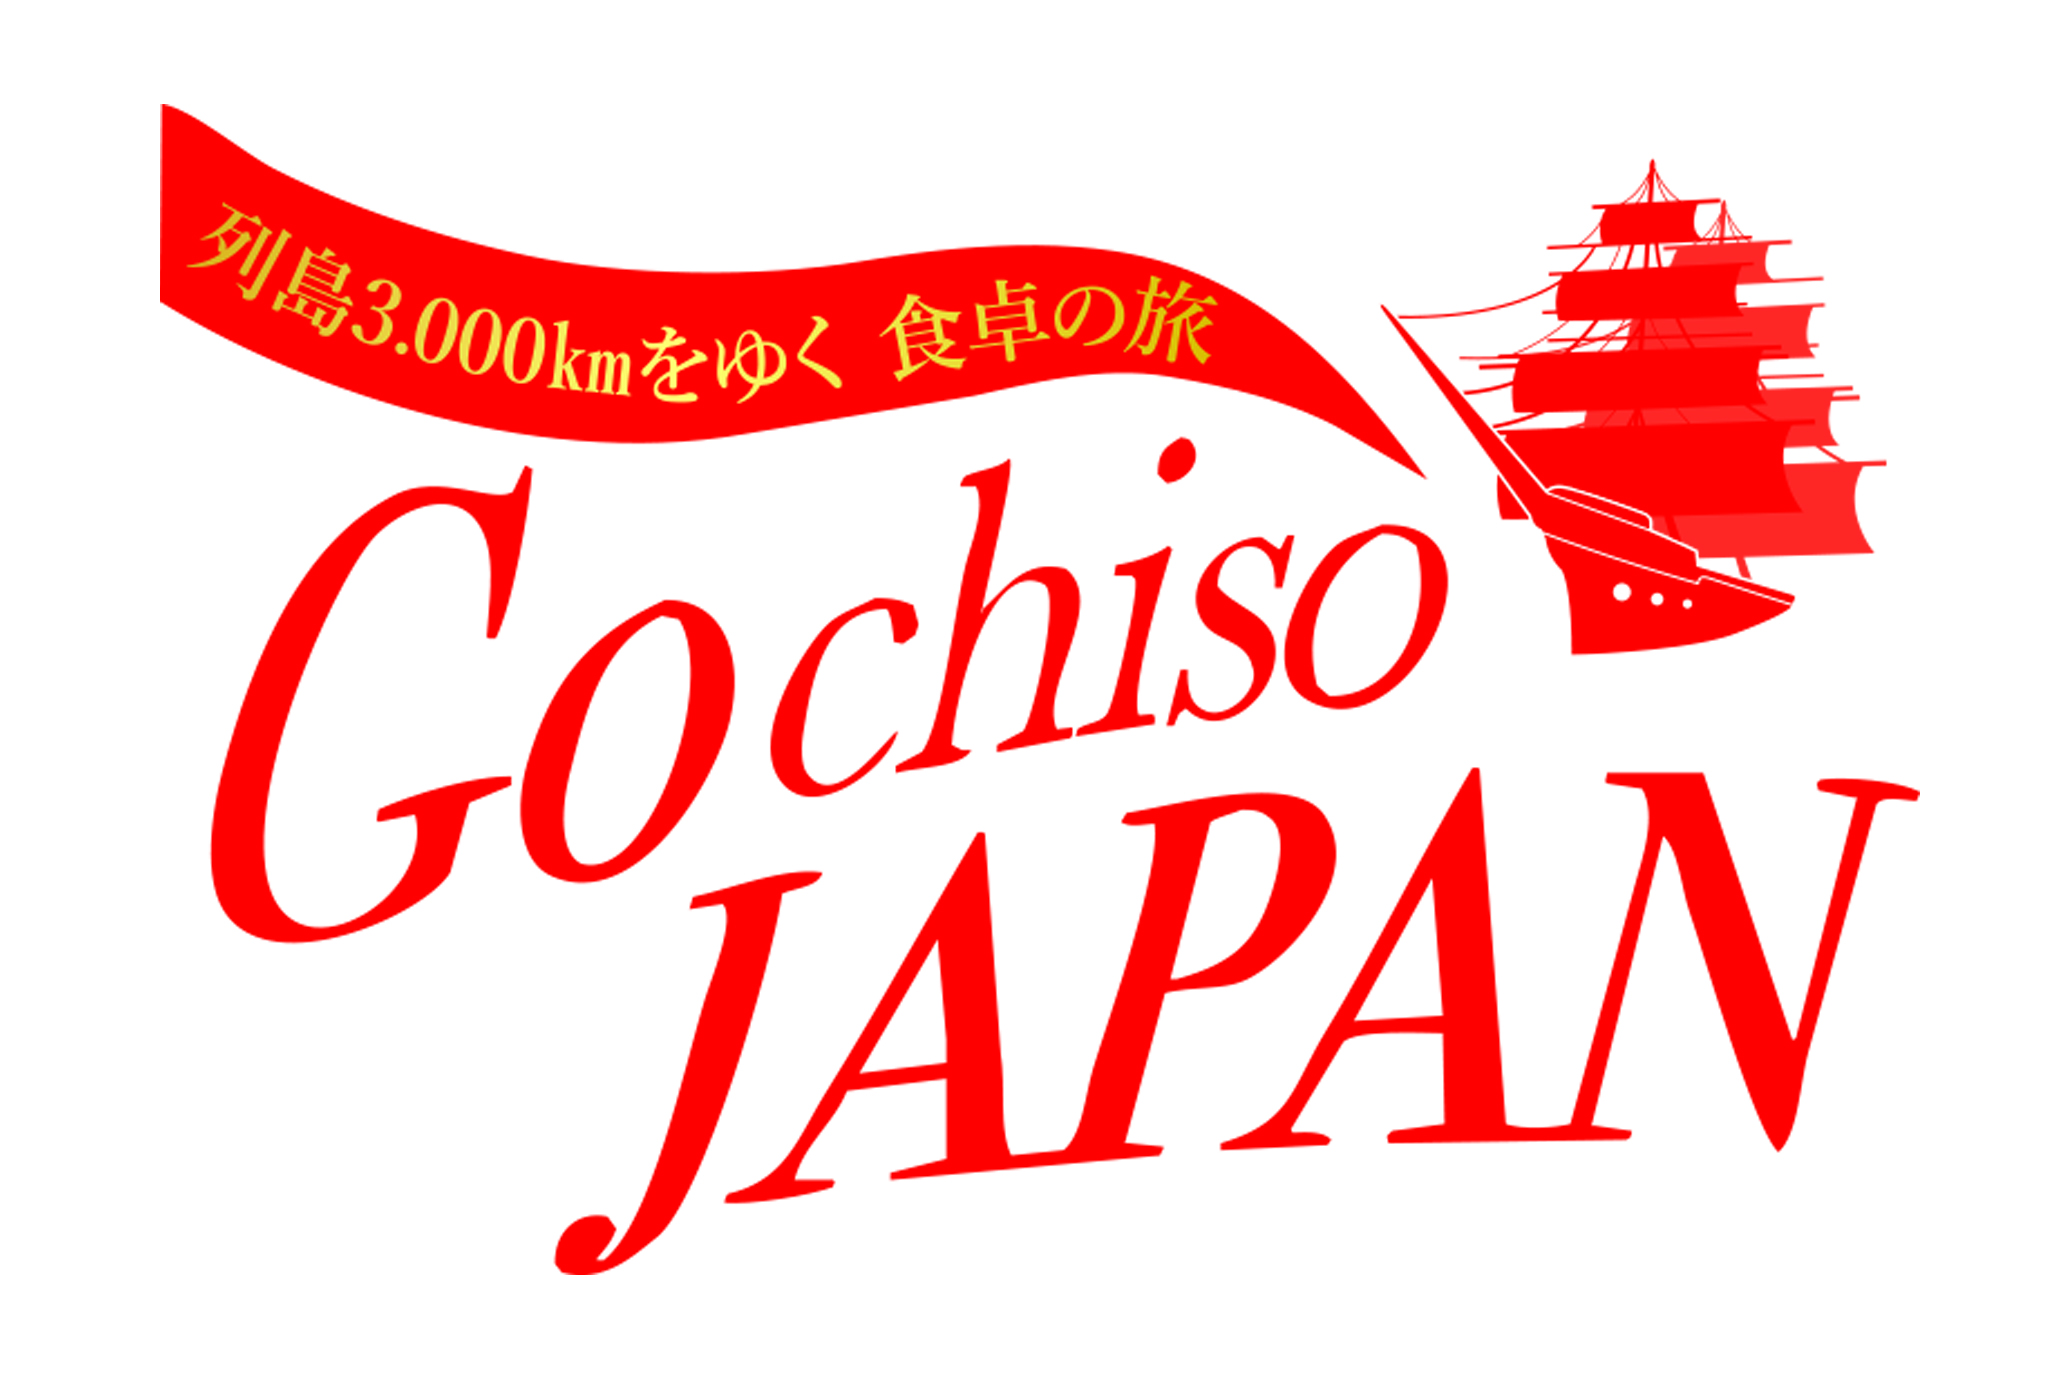 世界の海援隊ONLINE SHOP「Gochiso JAPAN」